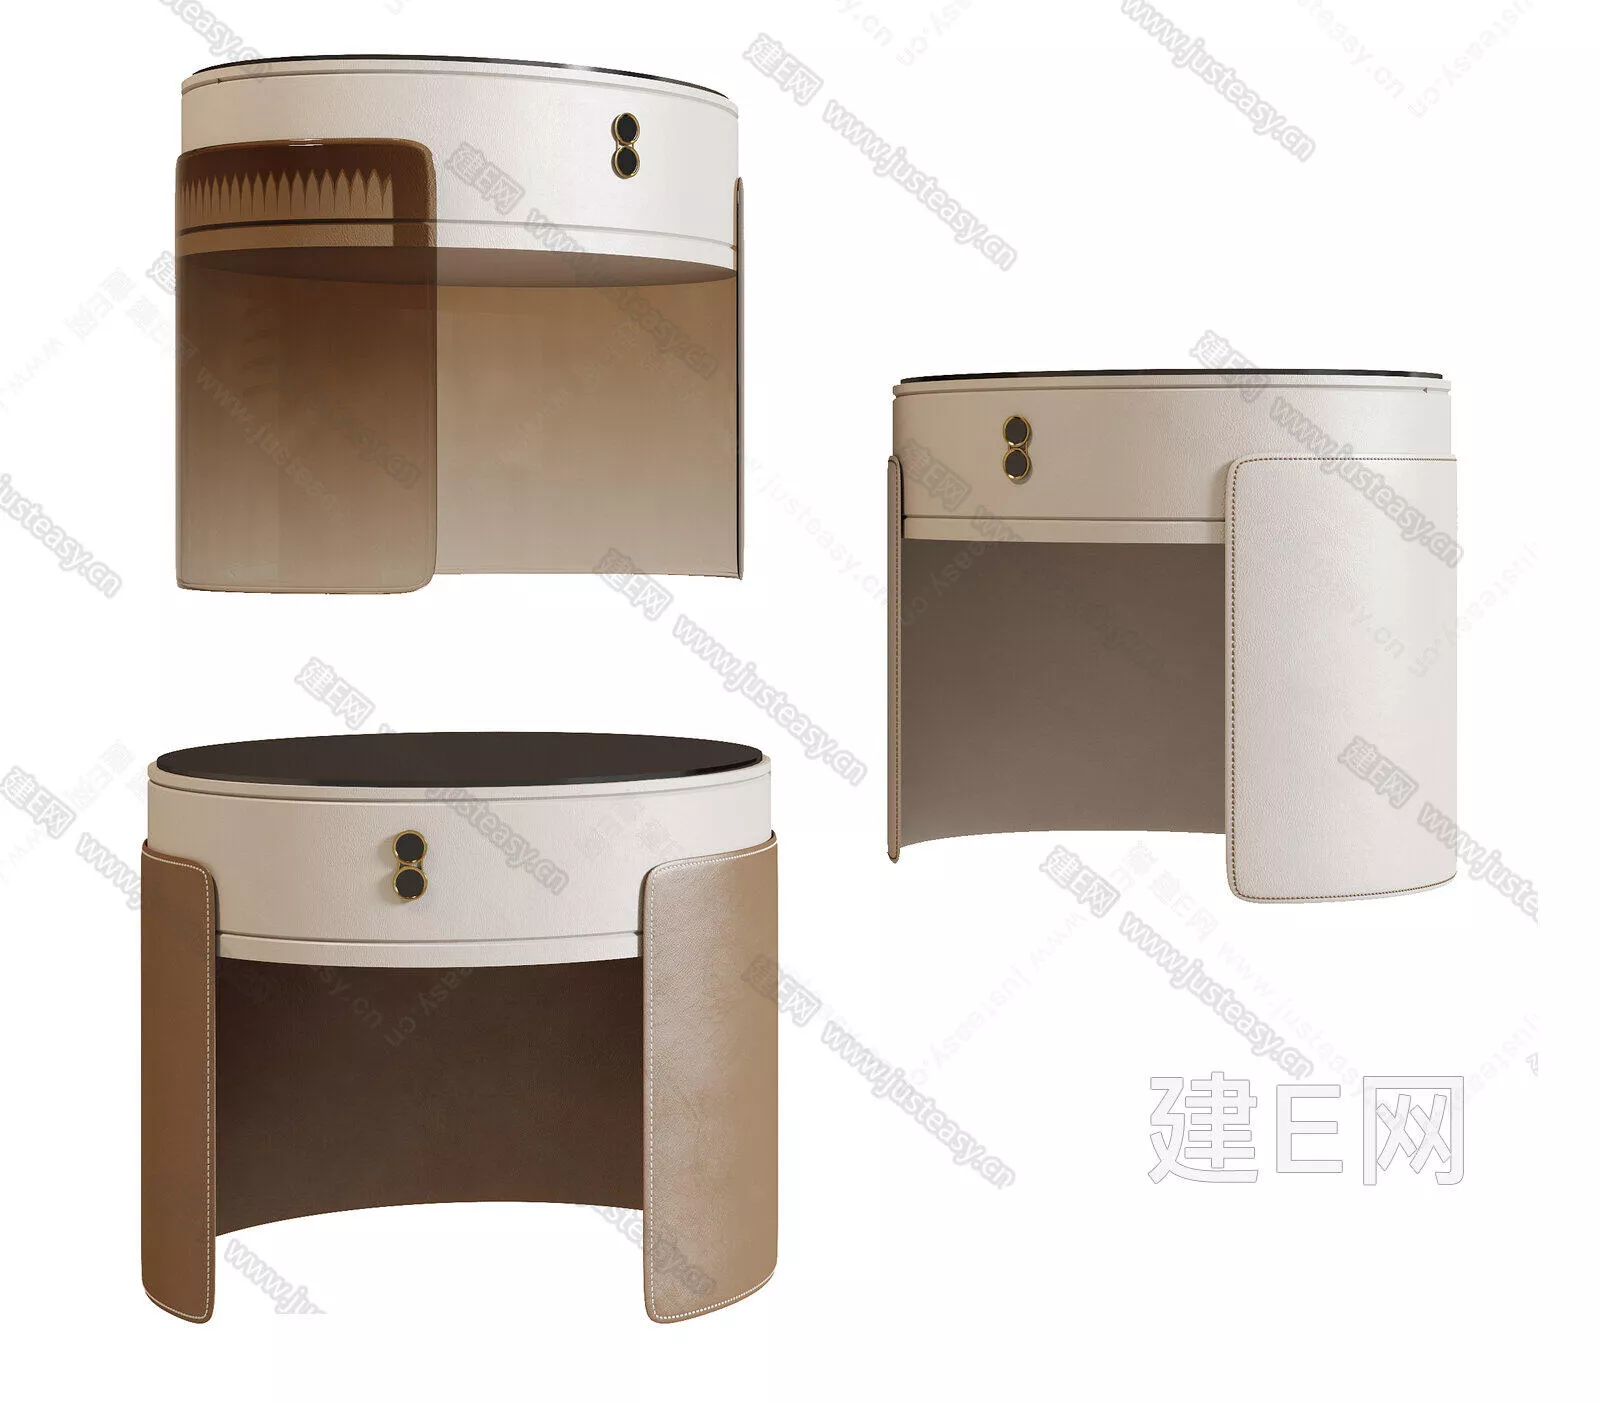 MODERN BEDSIDE TABLE - SKETCHUP 3D MODEL - ENSCAPE - 117263638